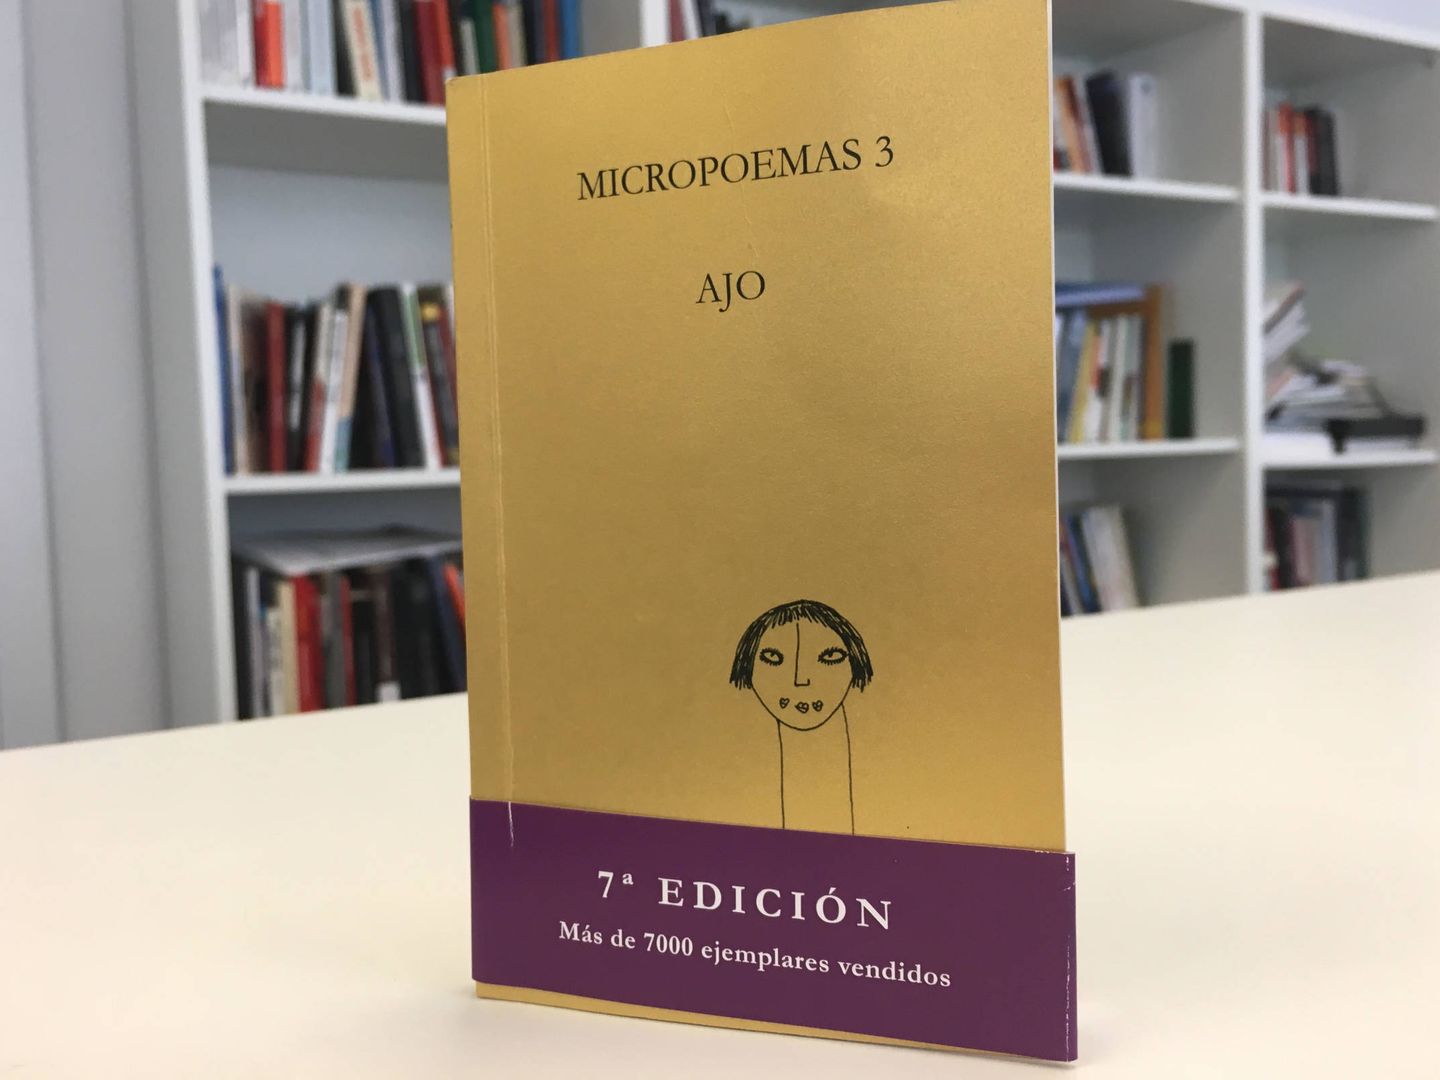 El tercer libro de micropoemas de AJO. (EC)